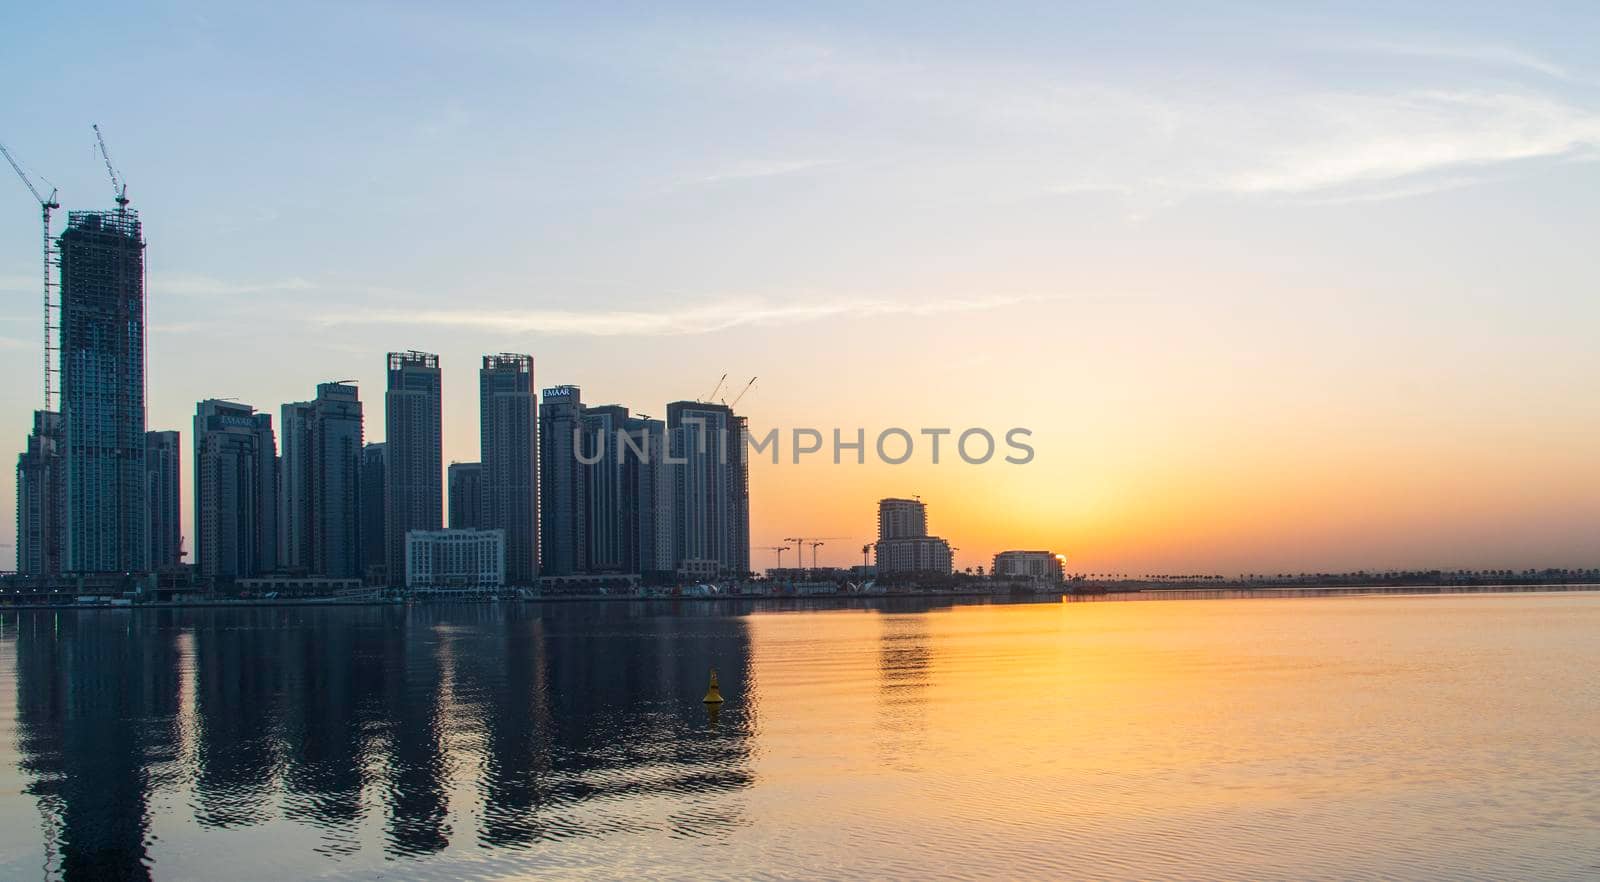 Dubai, UAE - 01.29.2021 Sunrise over Dubai city skyline. Creek Harbor by EMAAR. Outdoors by pazemin